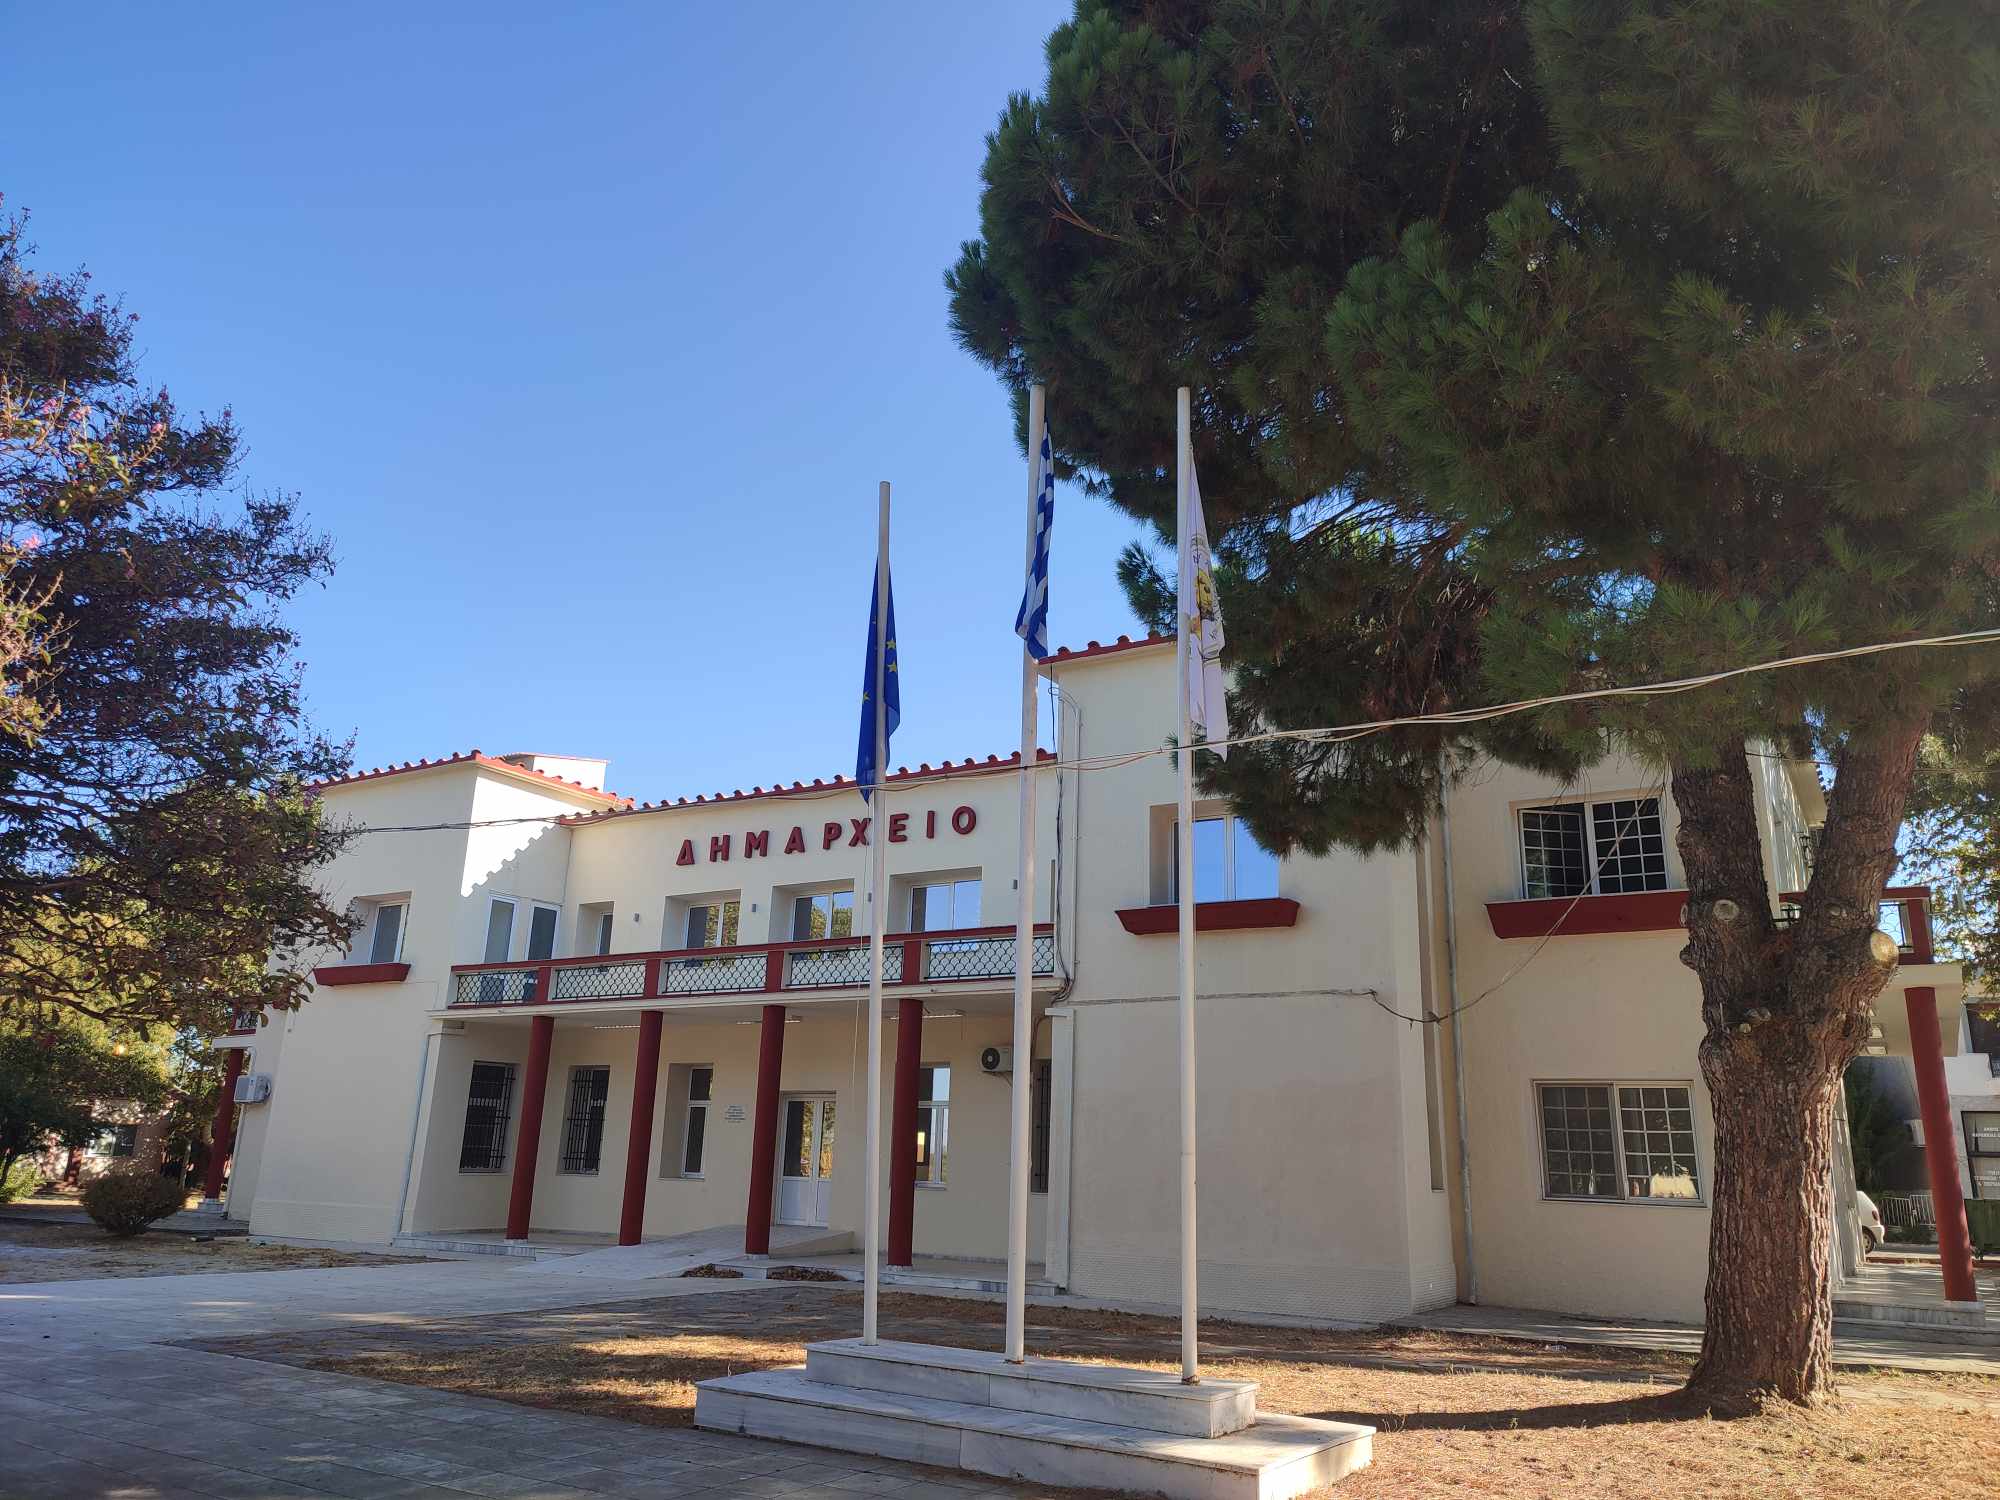 Σύγχρονο Δημαρχείο αποκτά πλέον ο Δήμος Μαρωνείας Σαπών (φωτος)